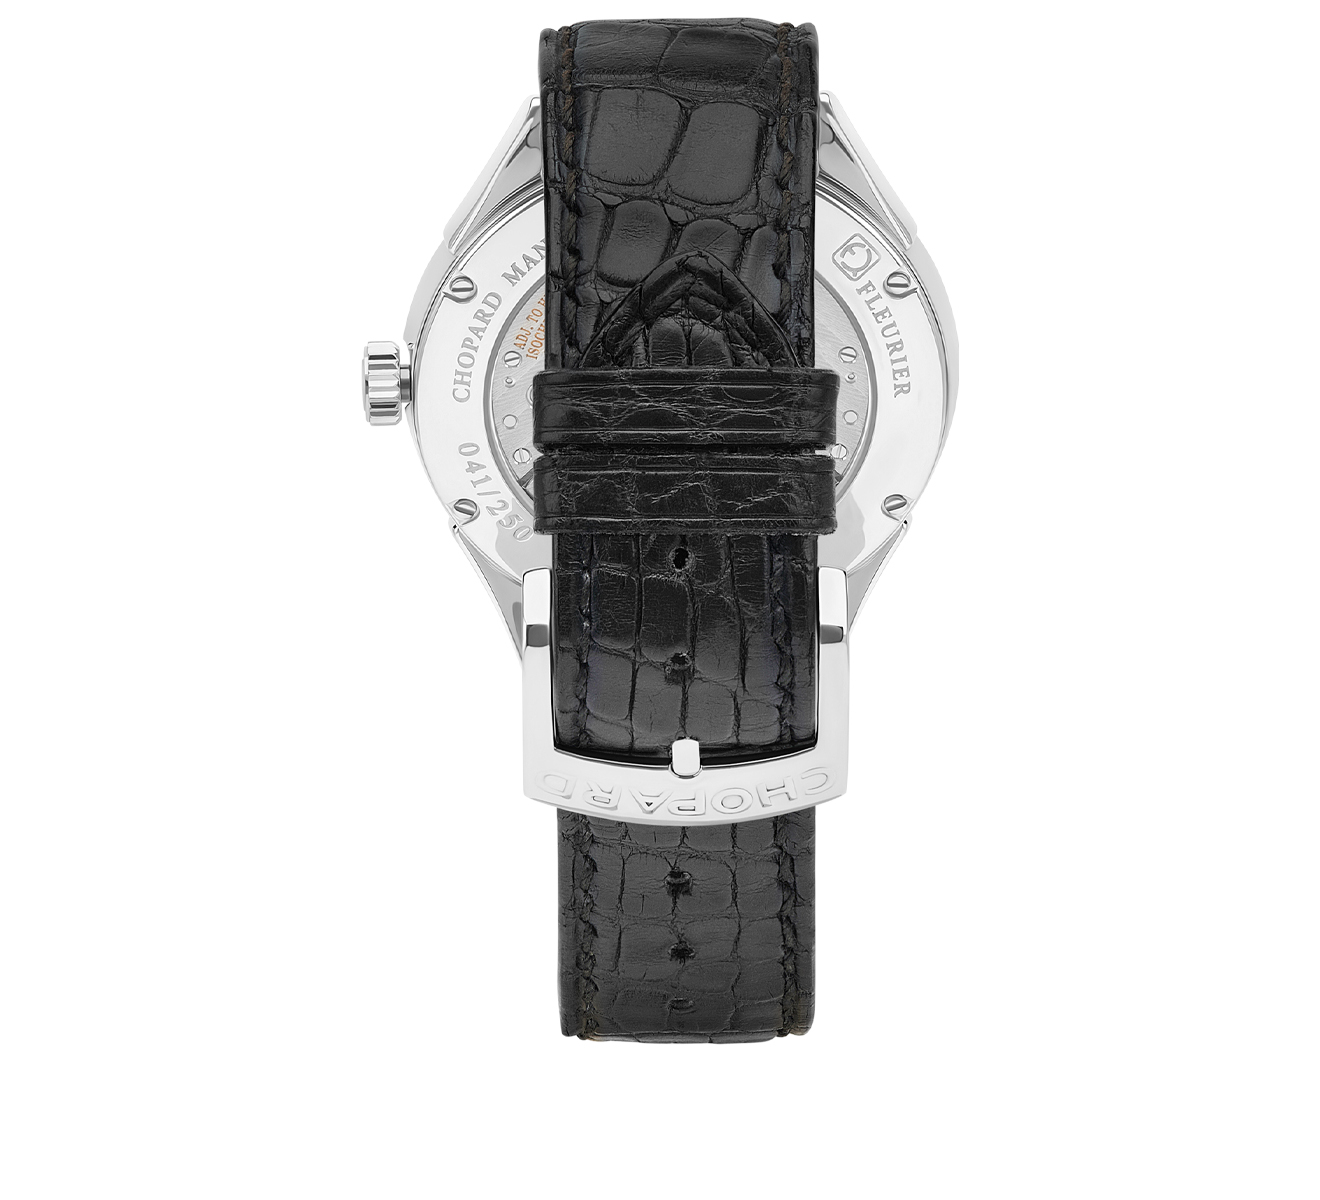 Часы Qualite Fleurier Chopard L.U.C Elegance 161896-1002 W - фото 2 – Mercury